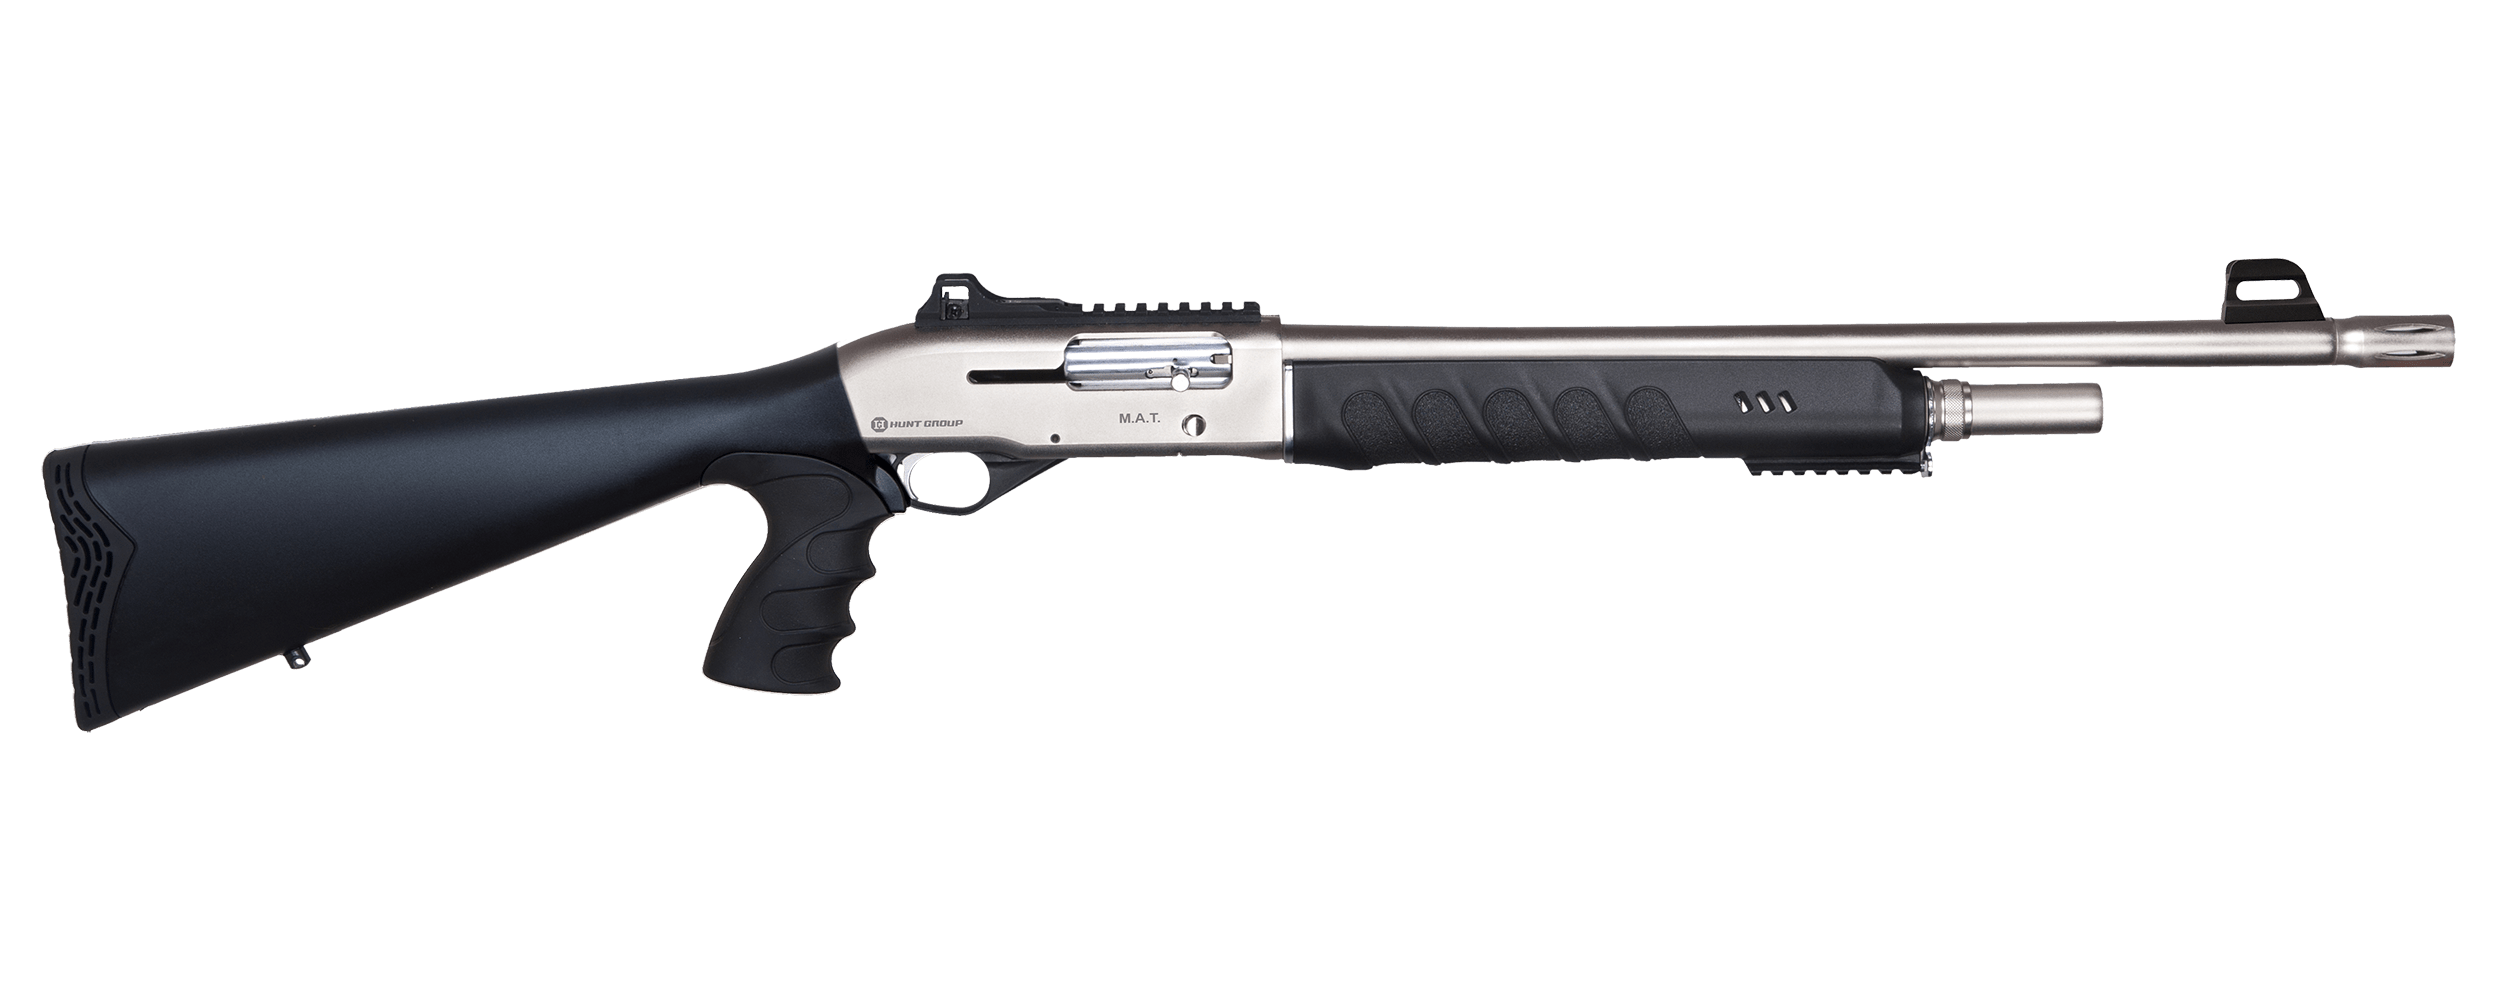 huntgroup-12ga-shot-gun